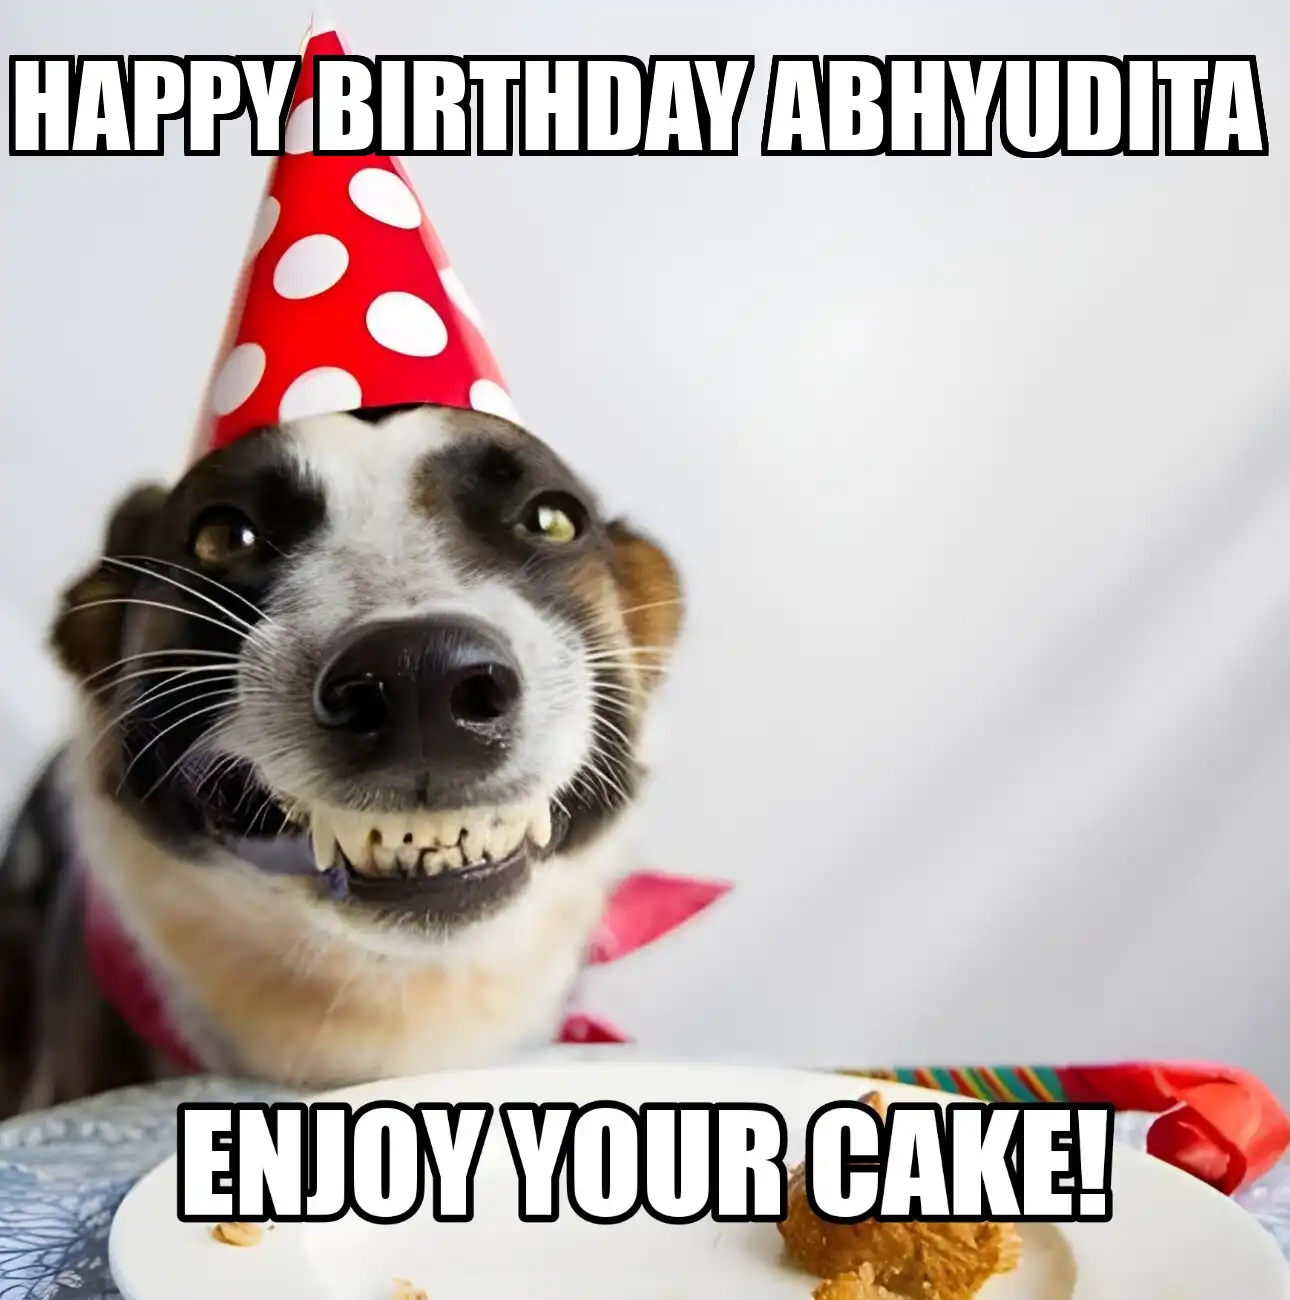 Happy Birthday Abhyudita Enjoy Your Cake Dog Meme